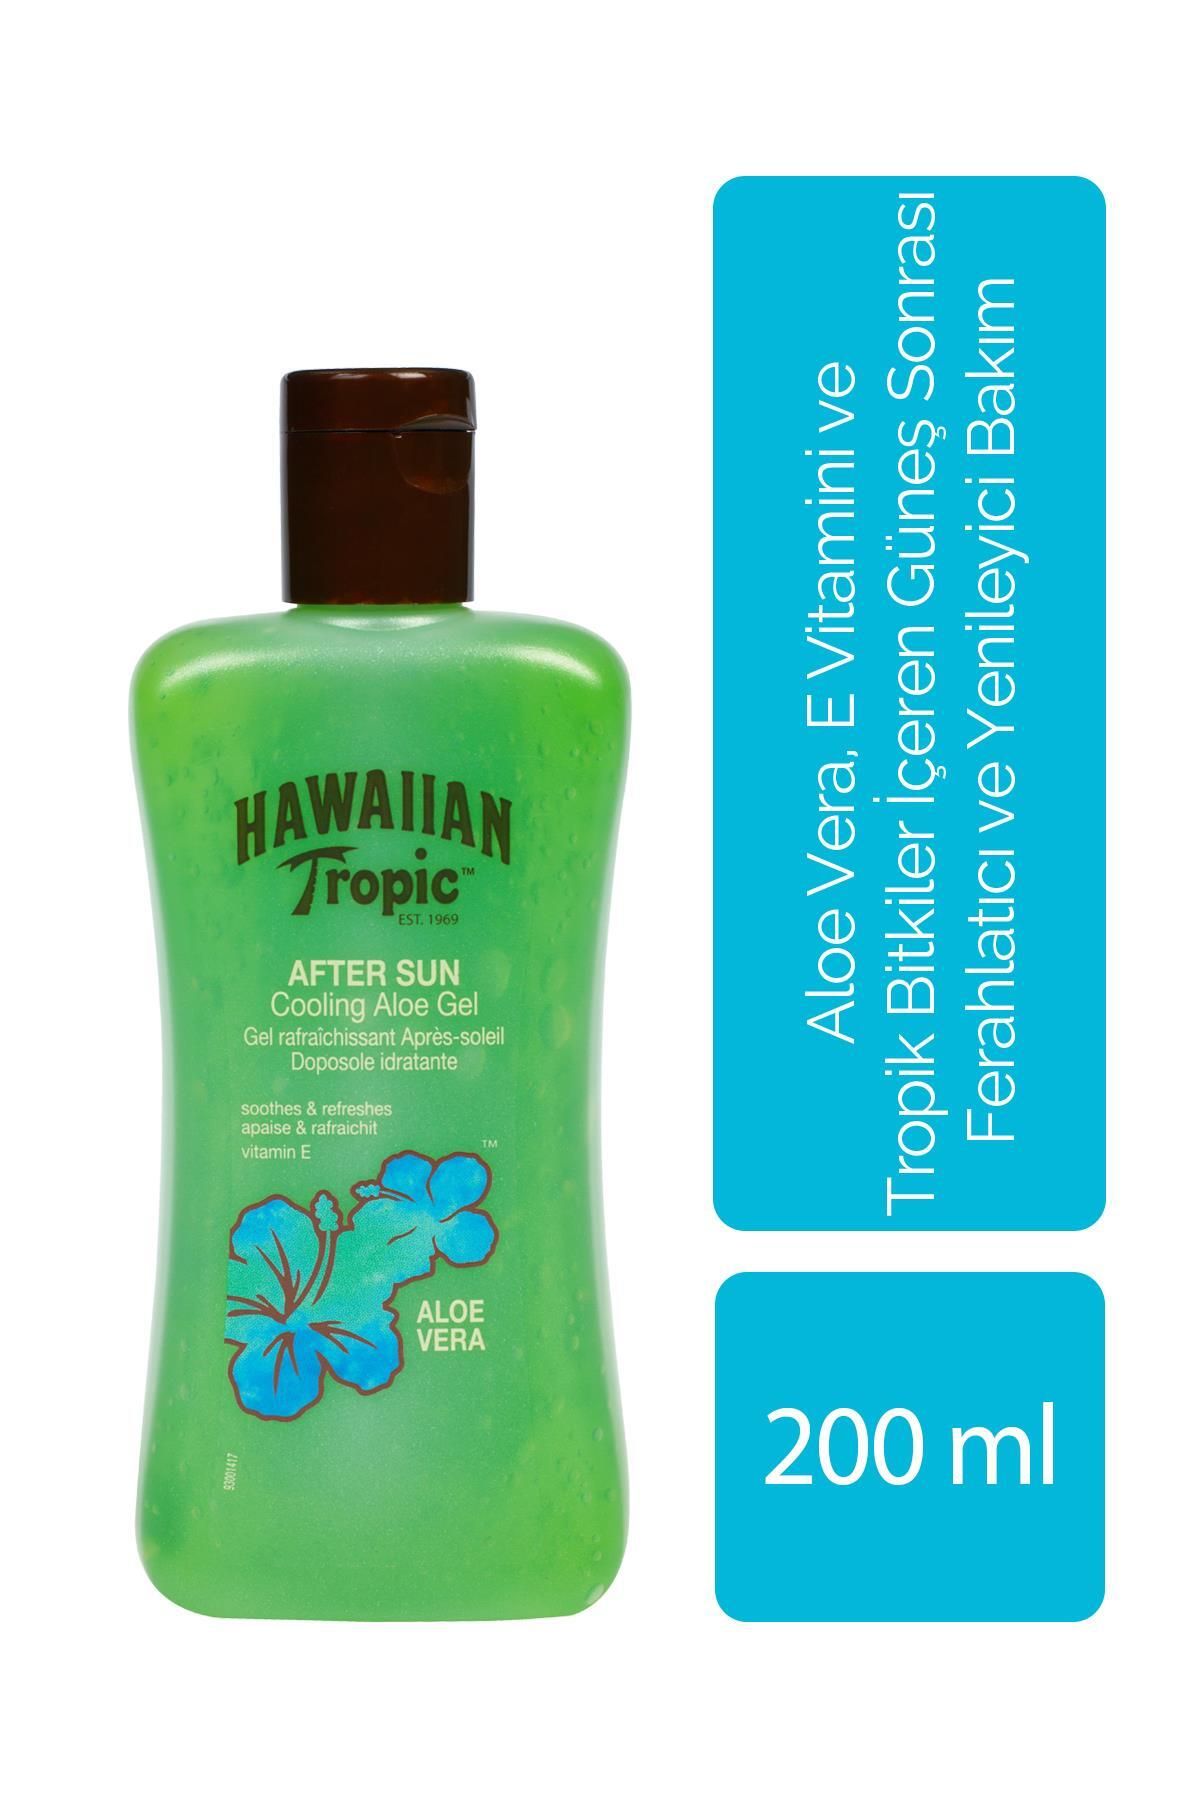 Hawaiian Tropic Aloe Vera, E Vitamini Ve Tropik Bitkiler İçeren Güneş Sonrası Ferahlatıcı Ve Yenileyici Jel